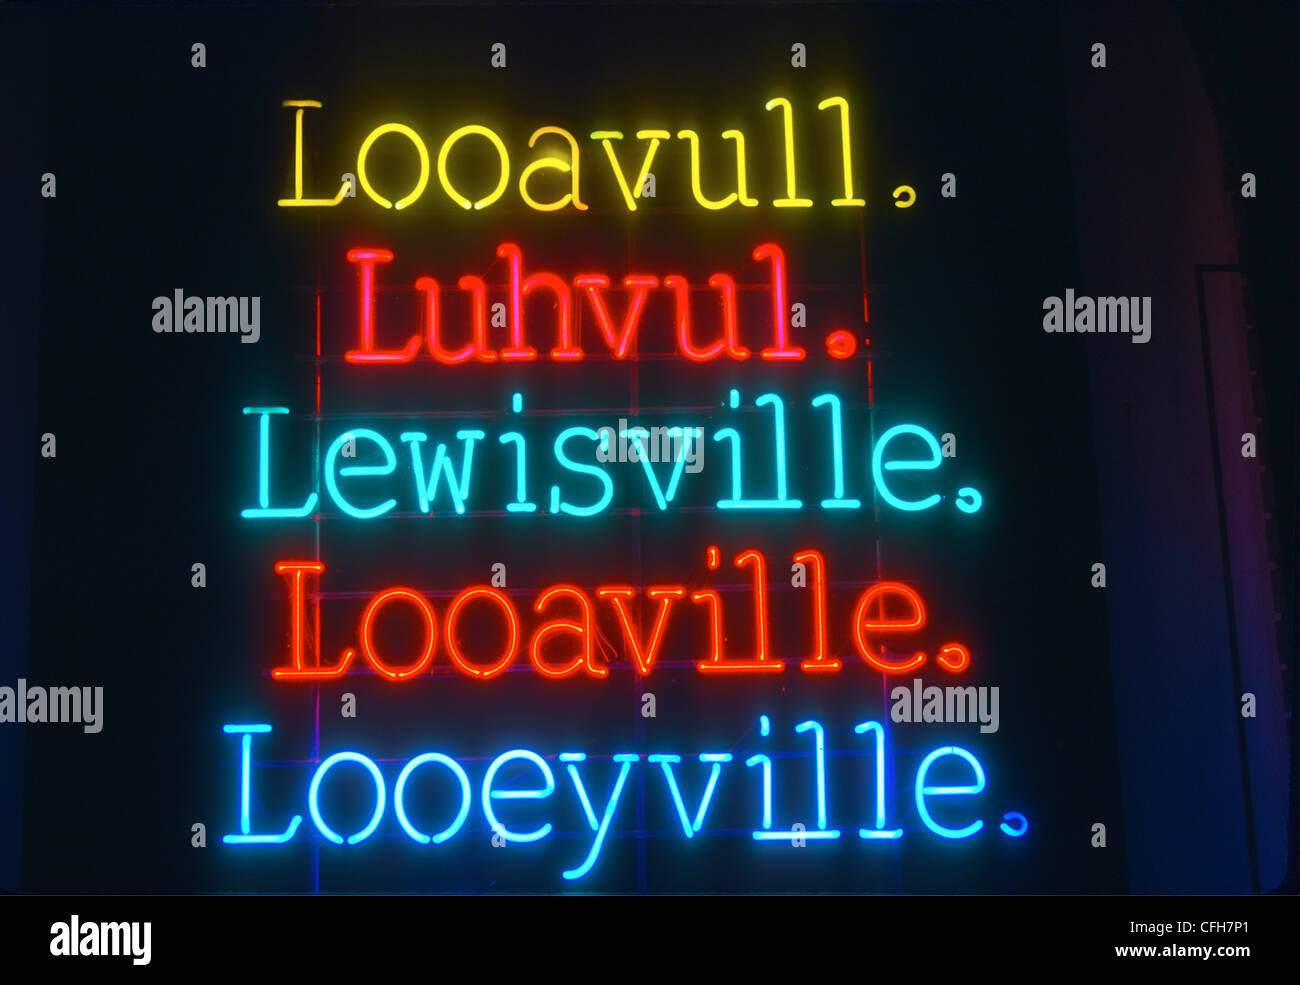 Looeyville Kentucky neon sign Louisville Stock Photo - Alamy